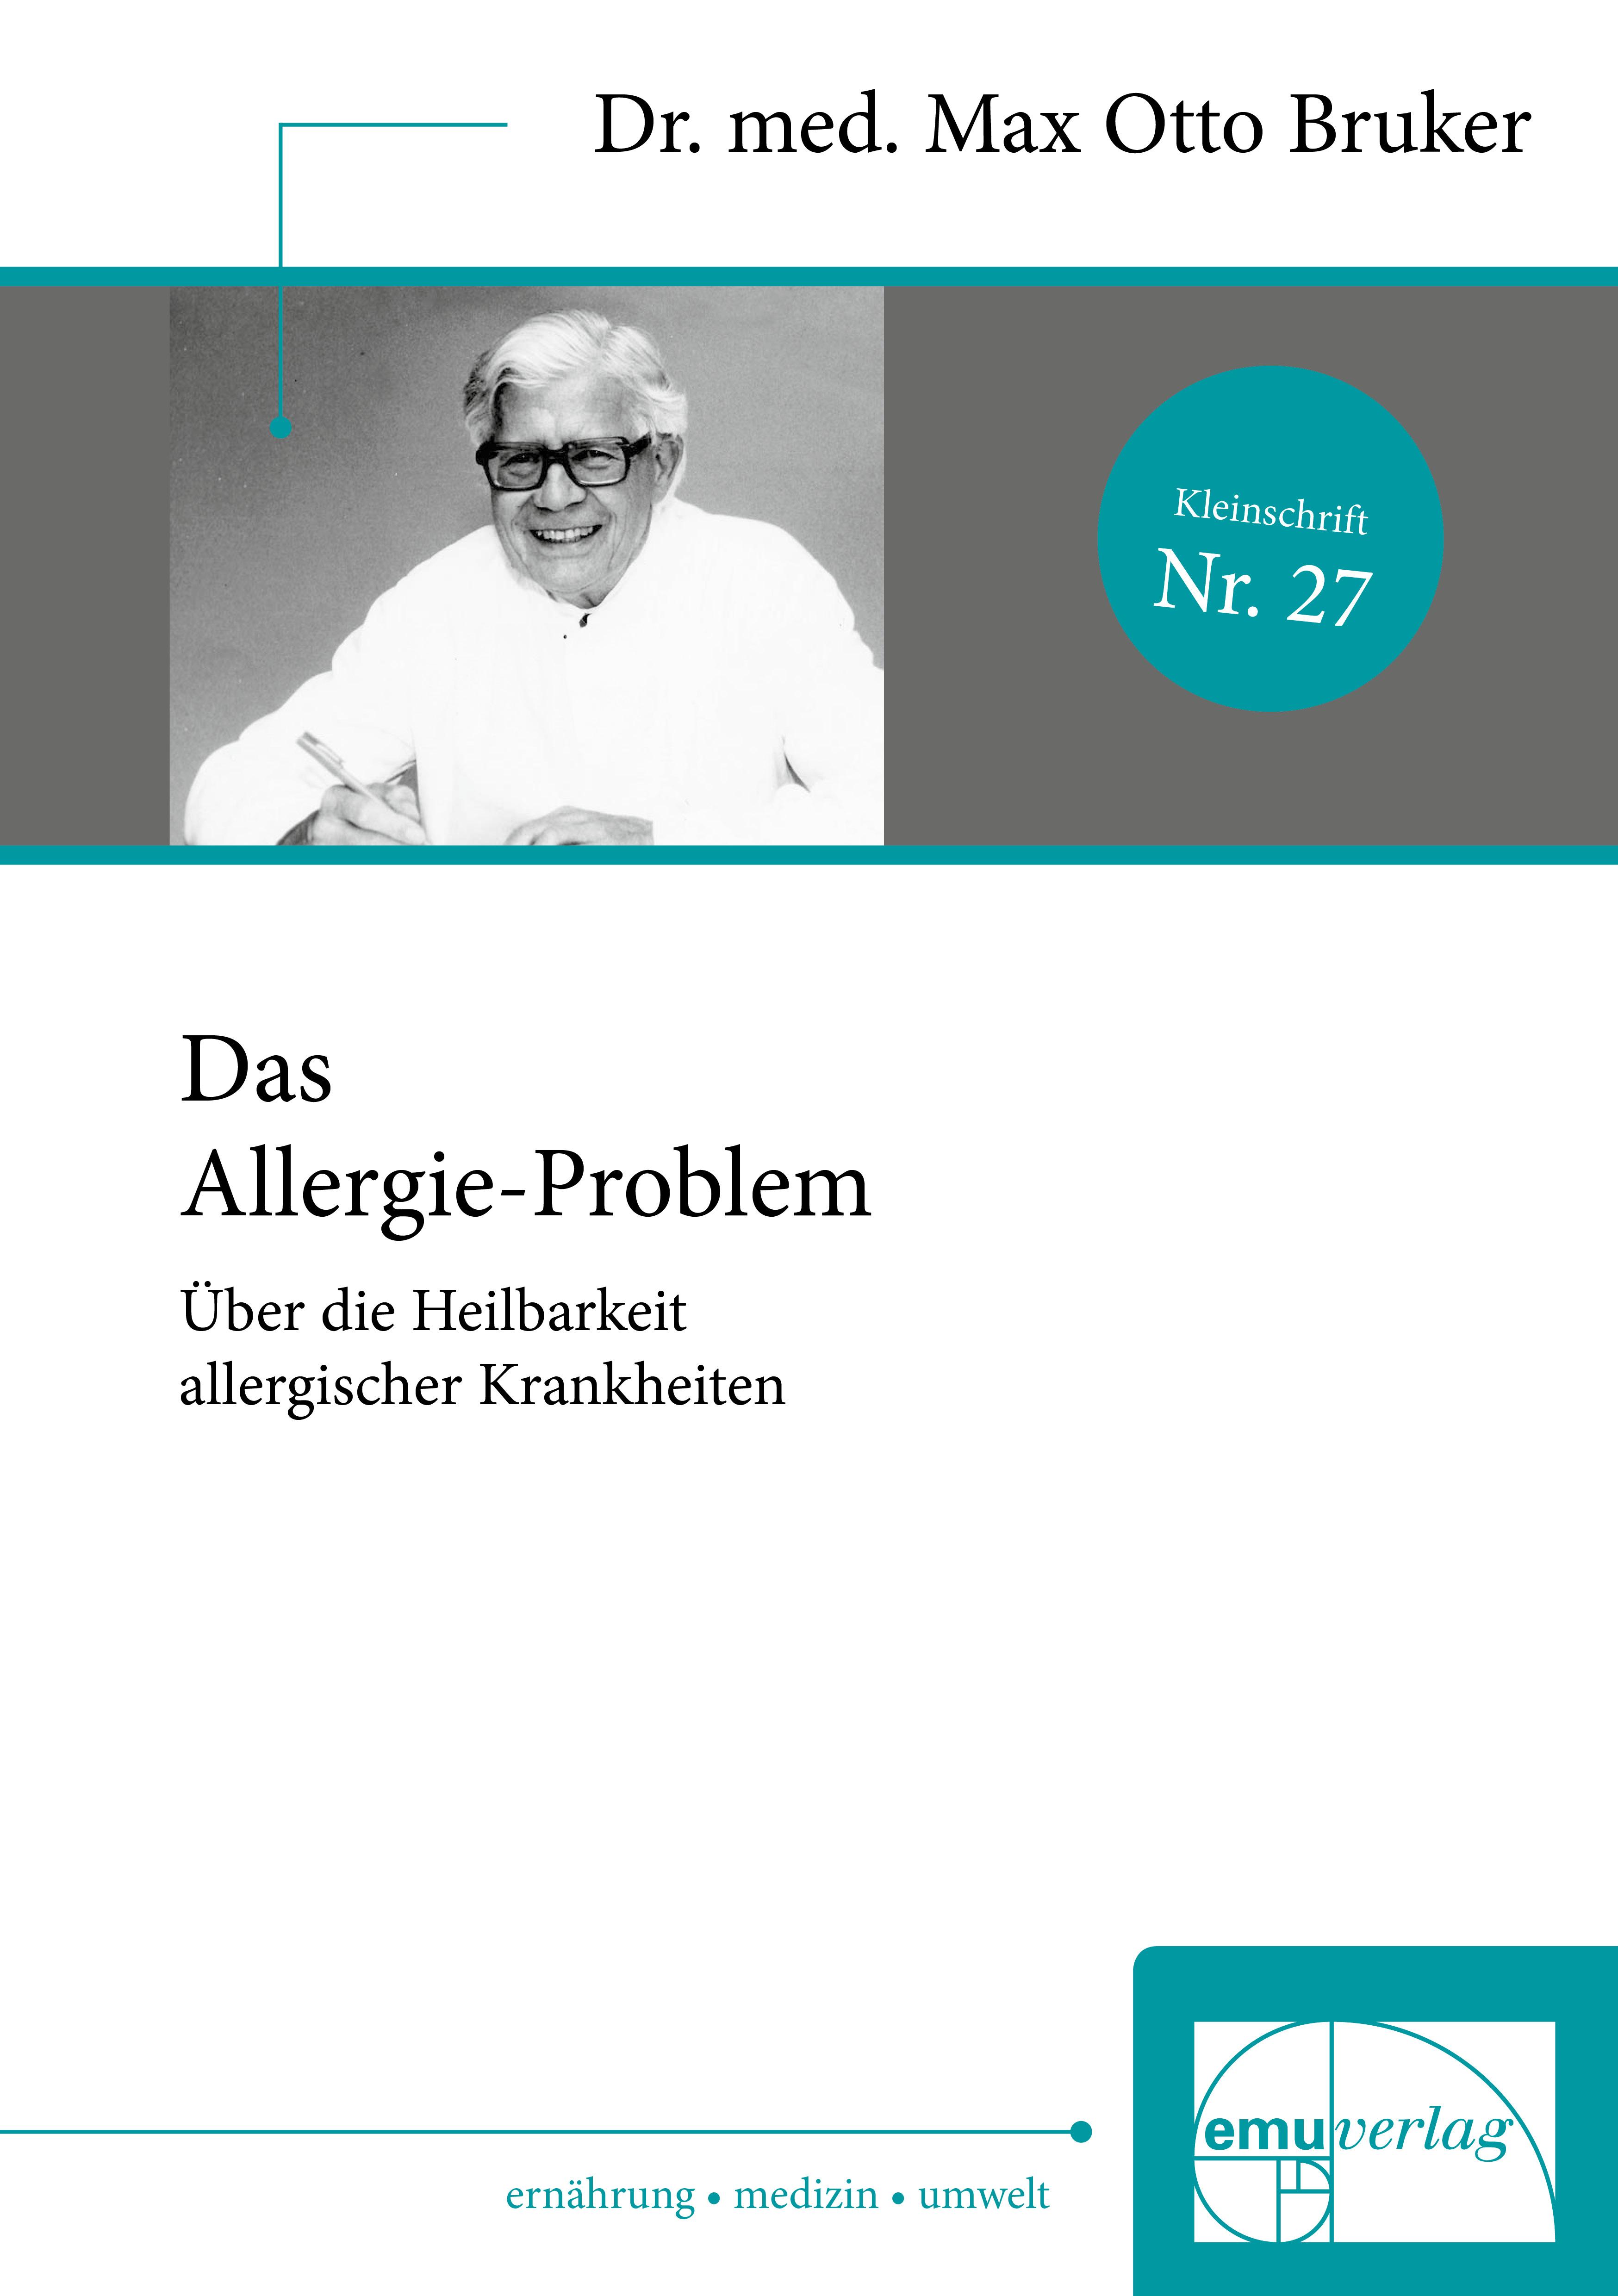 Das Allergie-Problem Nr. 27